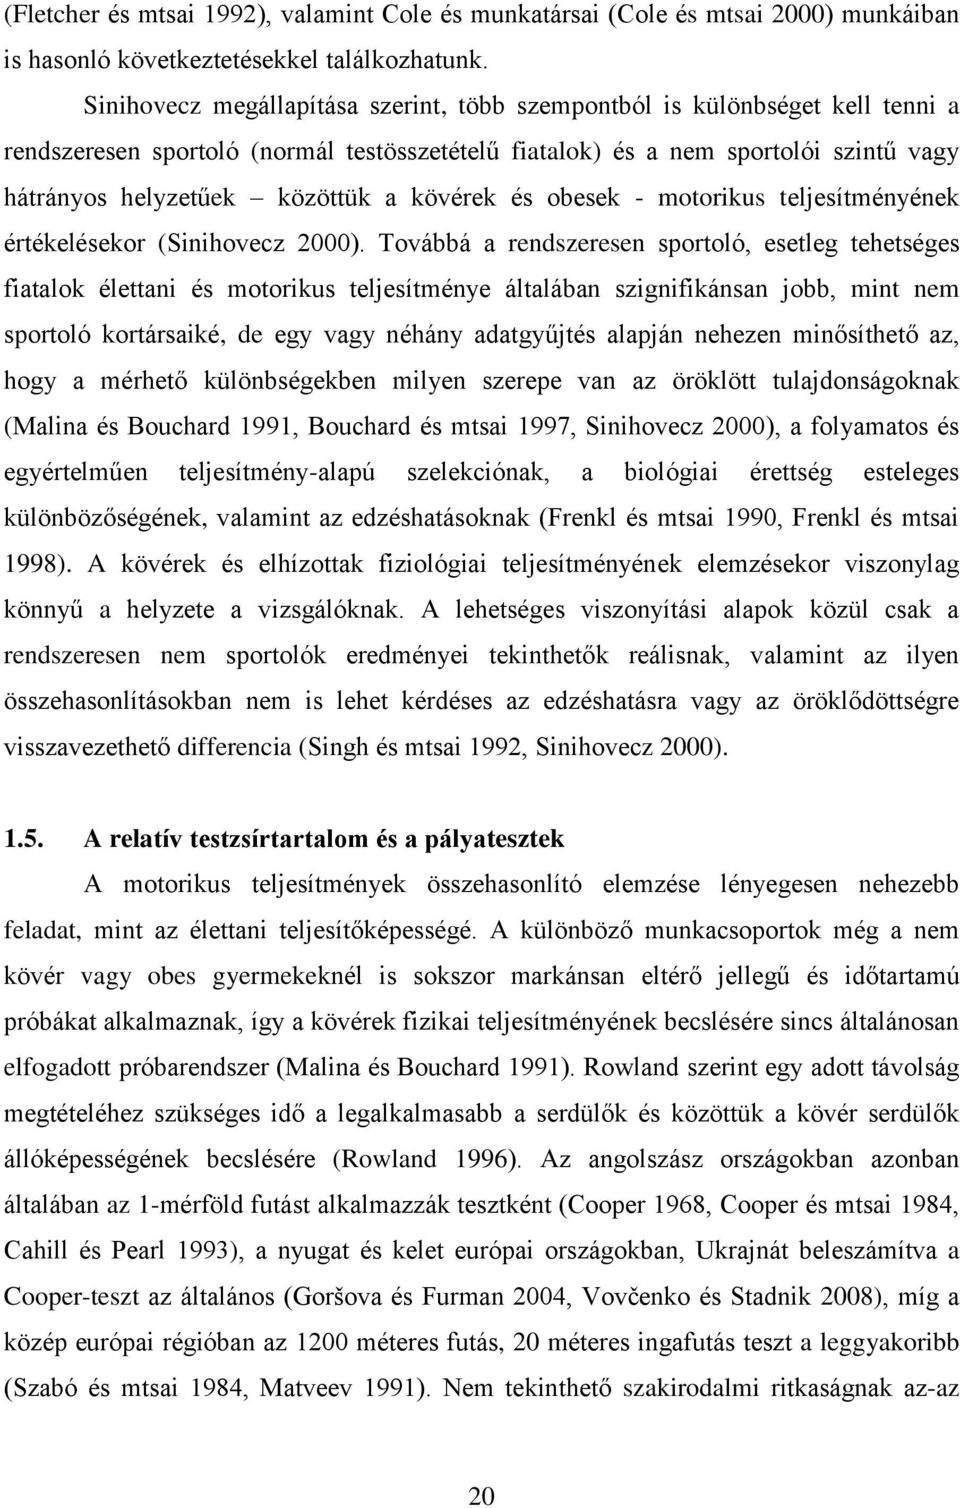 kövérek és obesek - motorikus teljesítményének értékelésekor (Sinihovecz 2000).